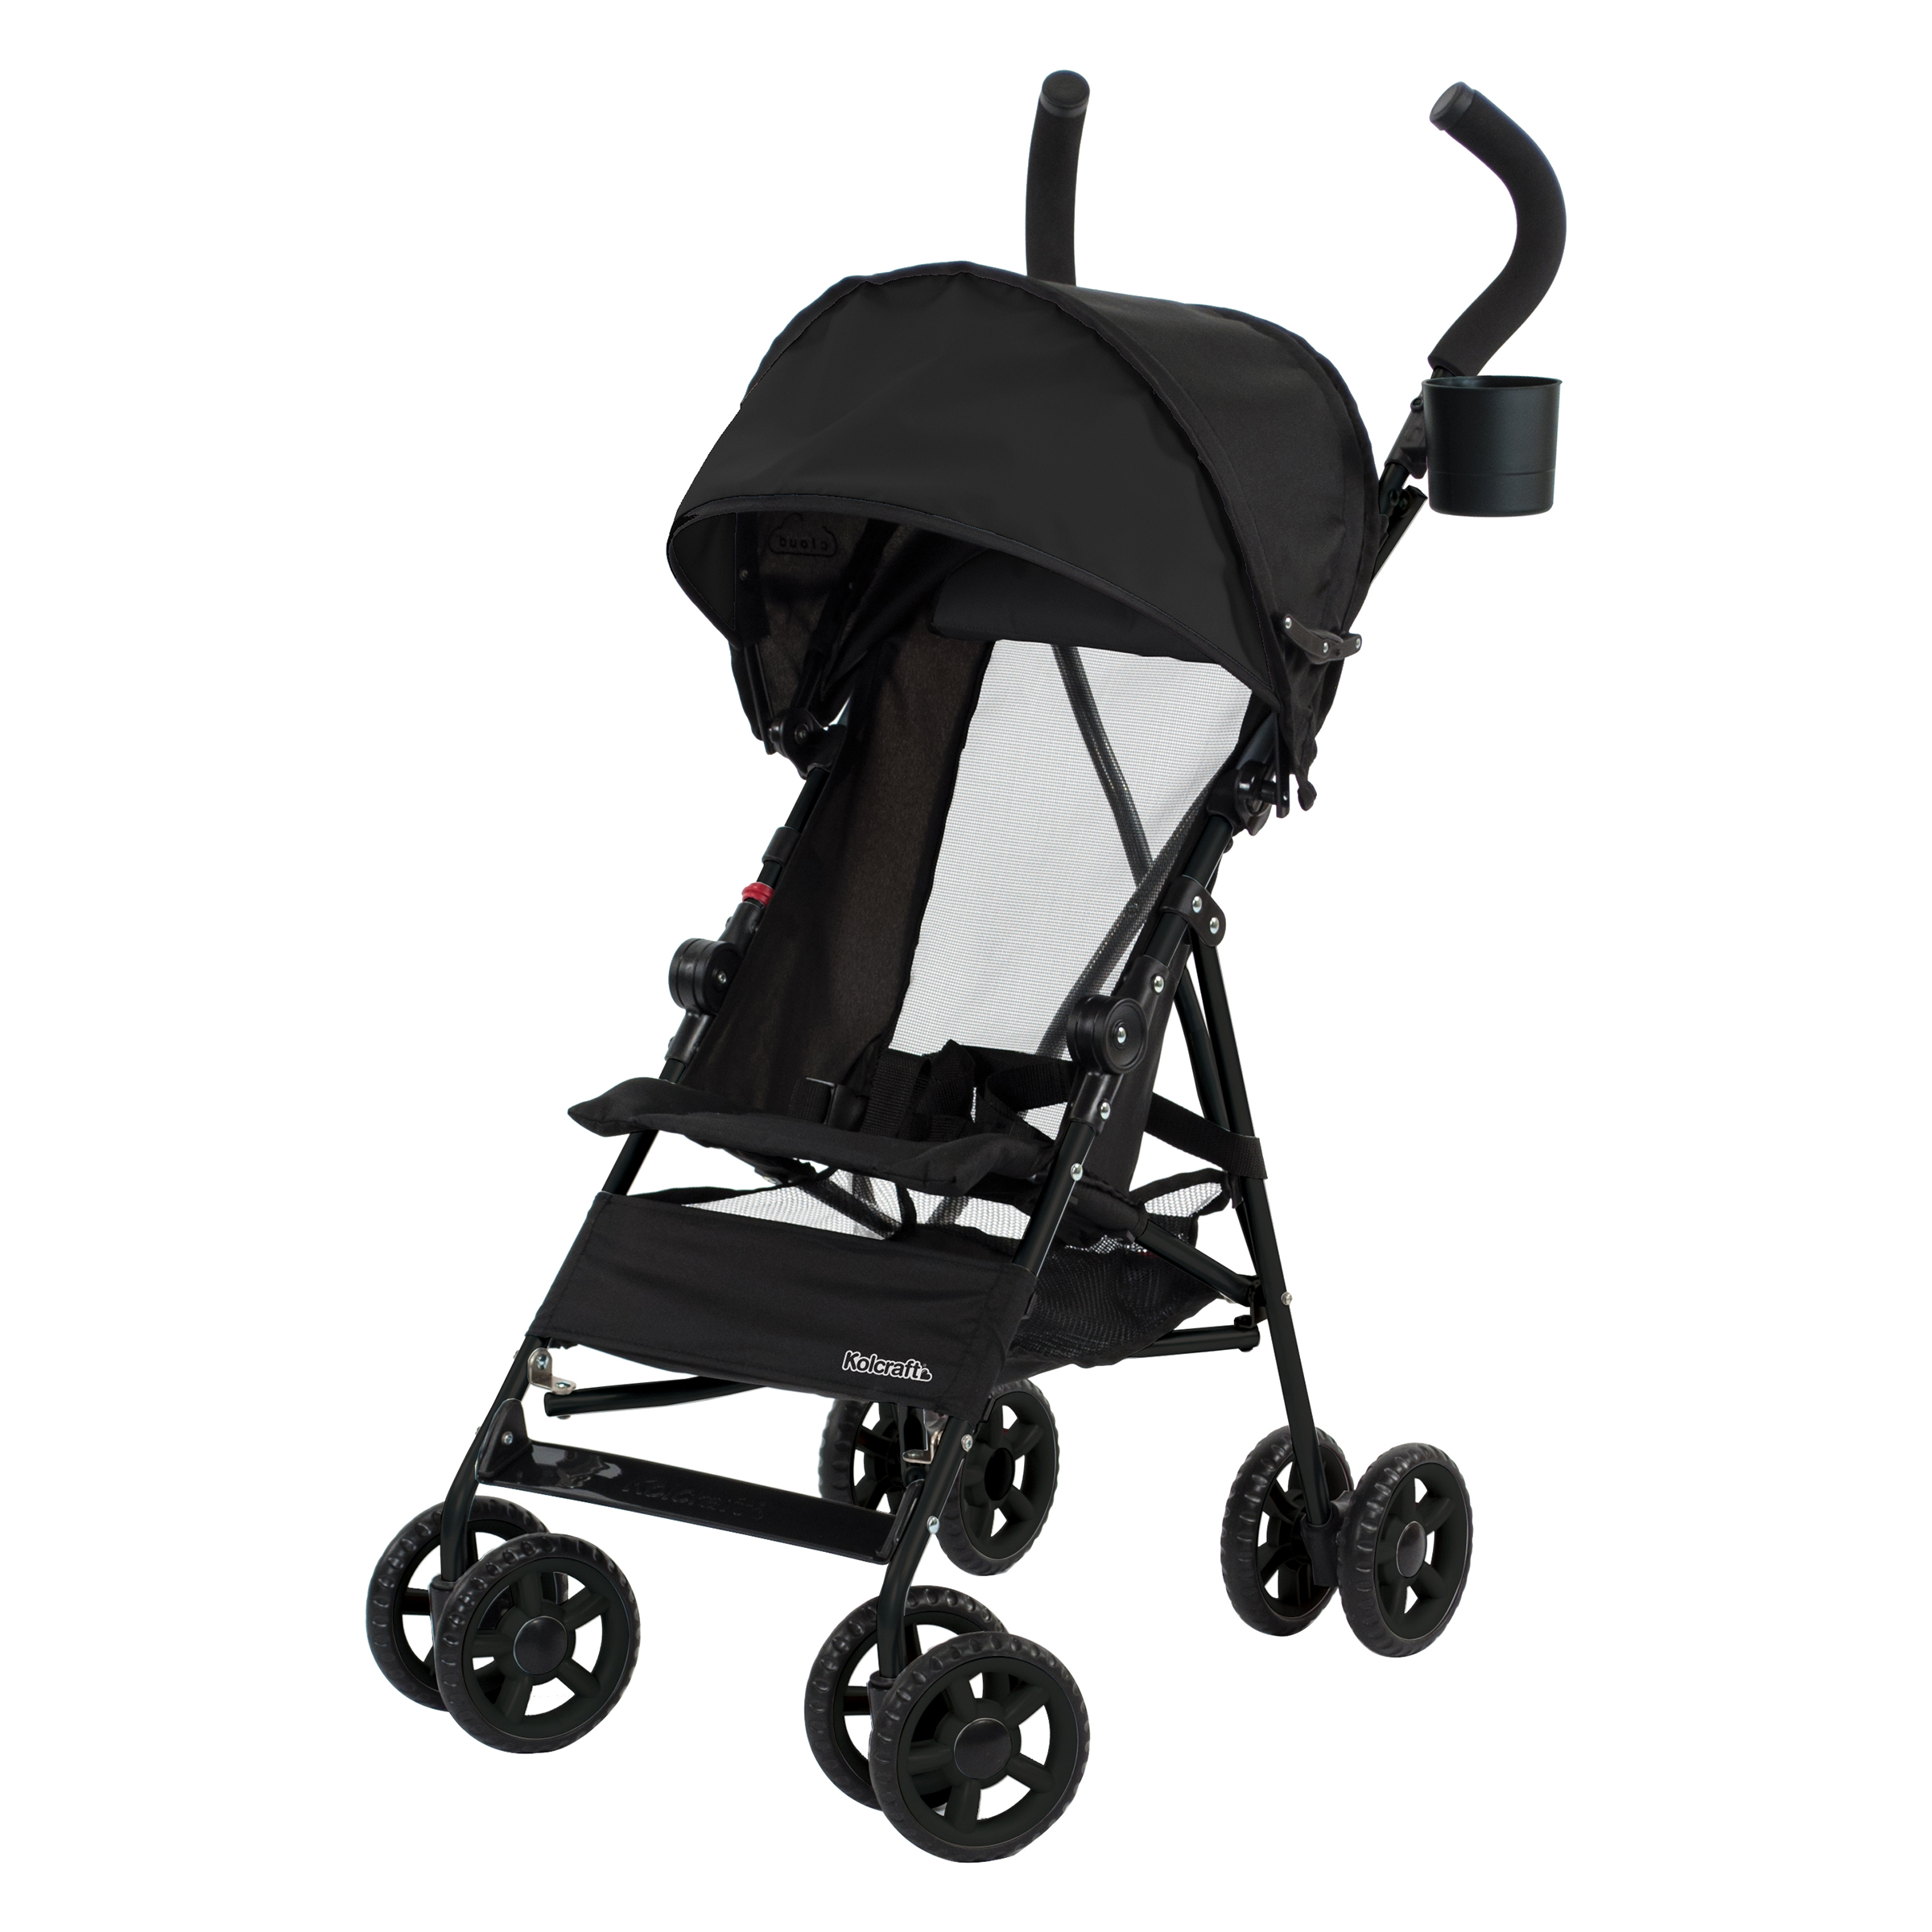 Kolcraft Cloud Umbrella Unisex Stroller Black for Child/Toddler - image 1 of 9